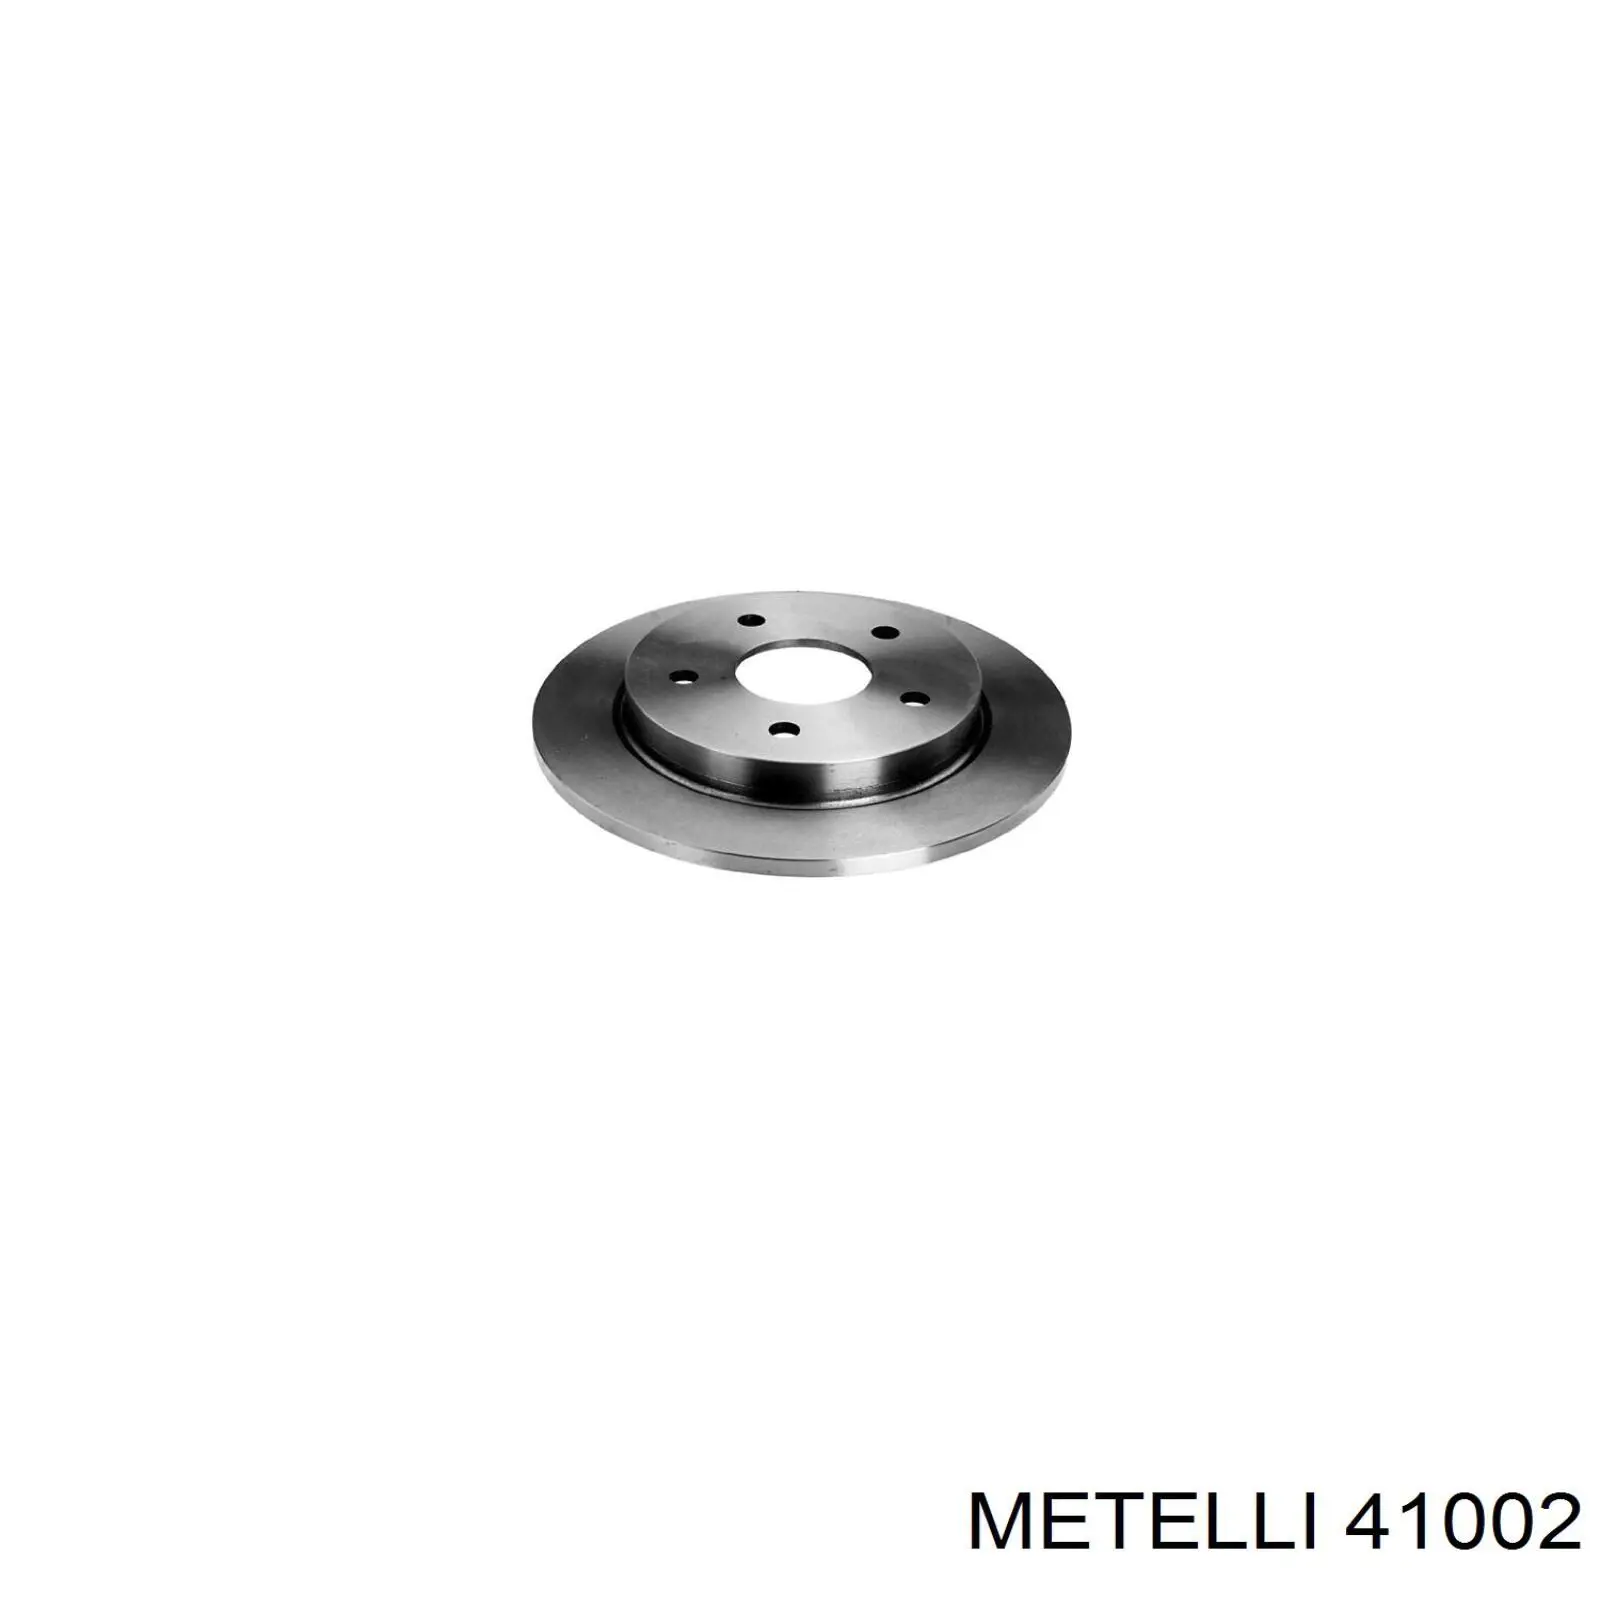 41002 Metelli цилиндр тормозной колесный рабочий задний